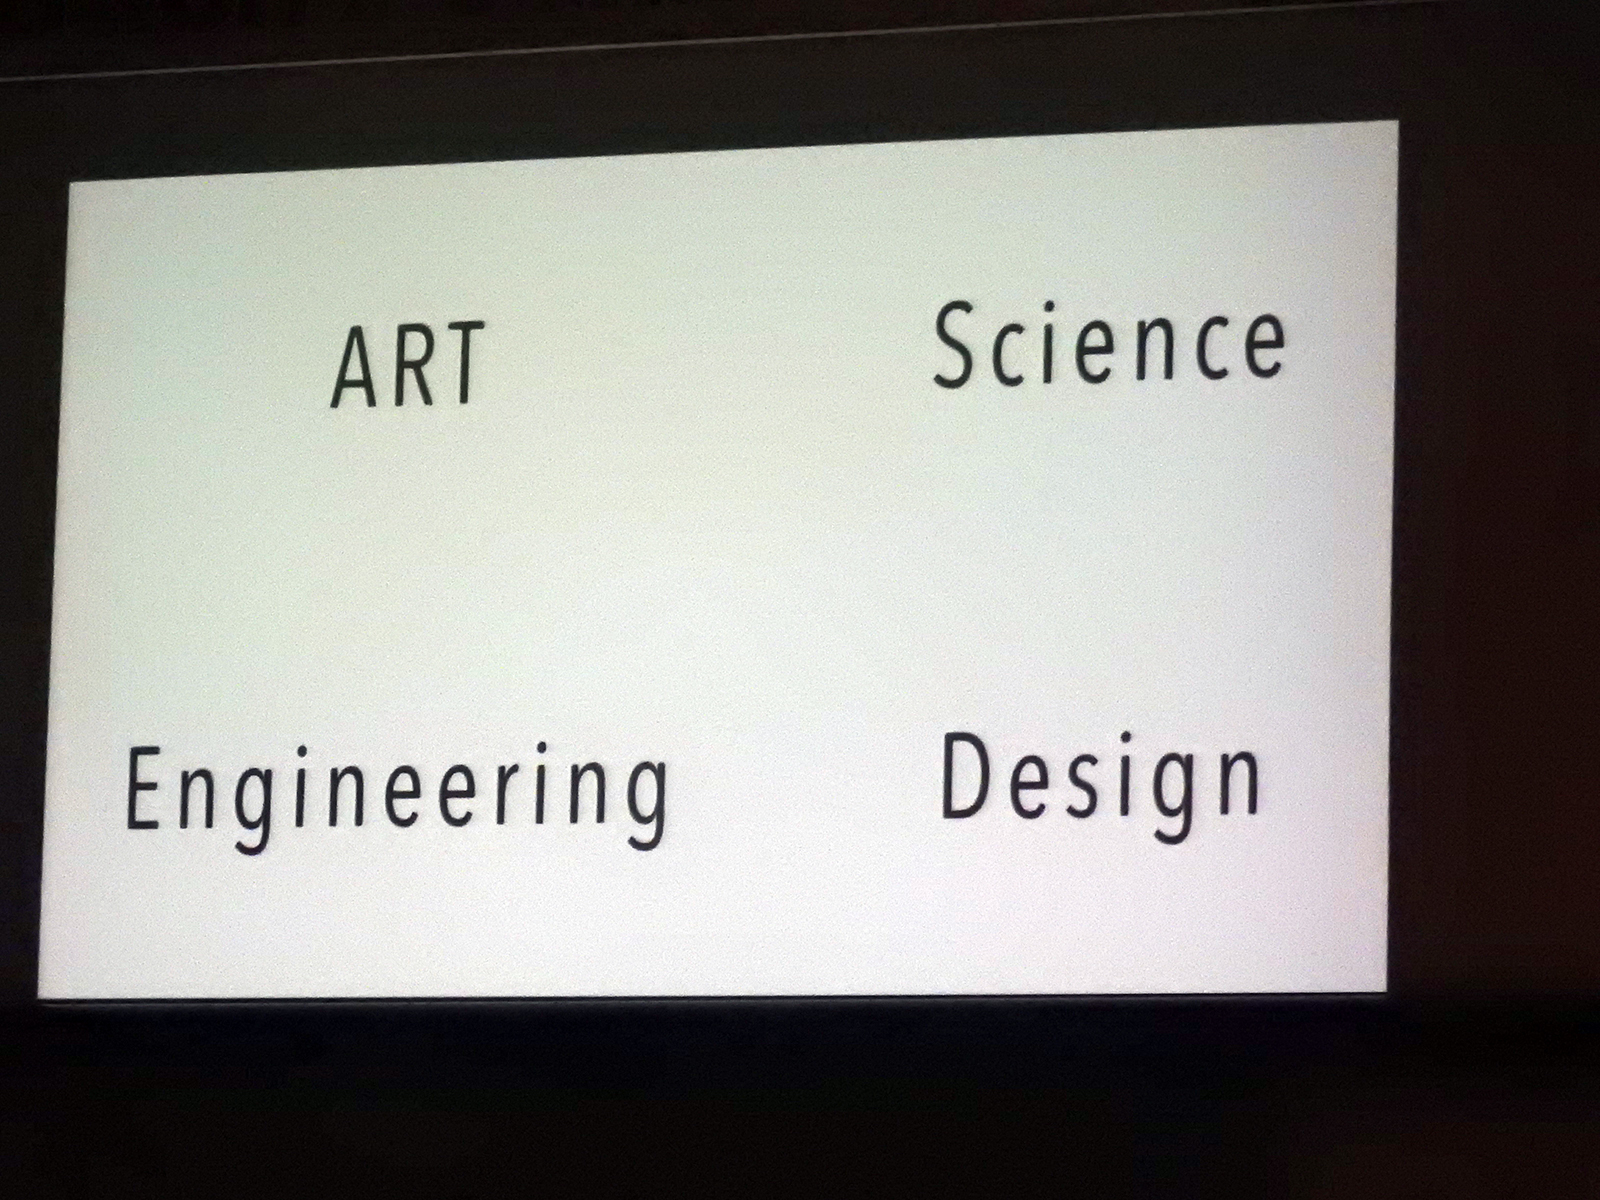 アート、サイエンス、エンジニアリング、デザインの4つが重要